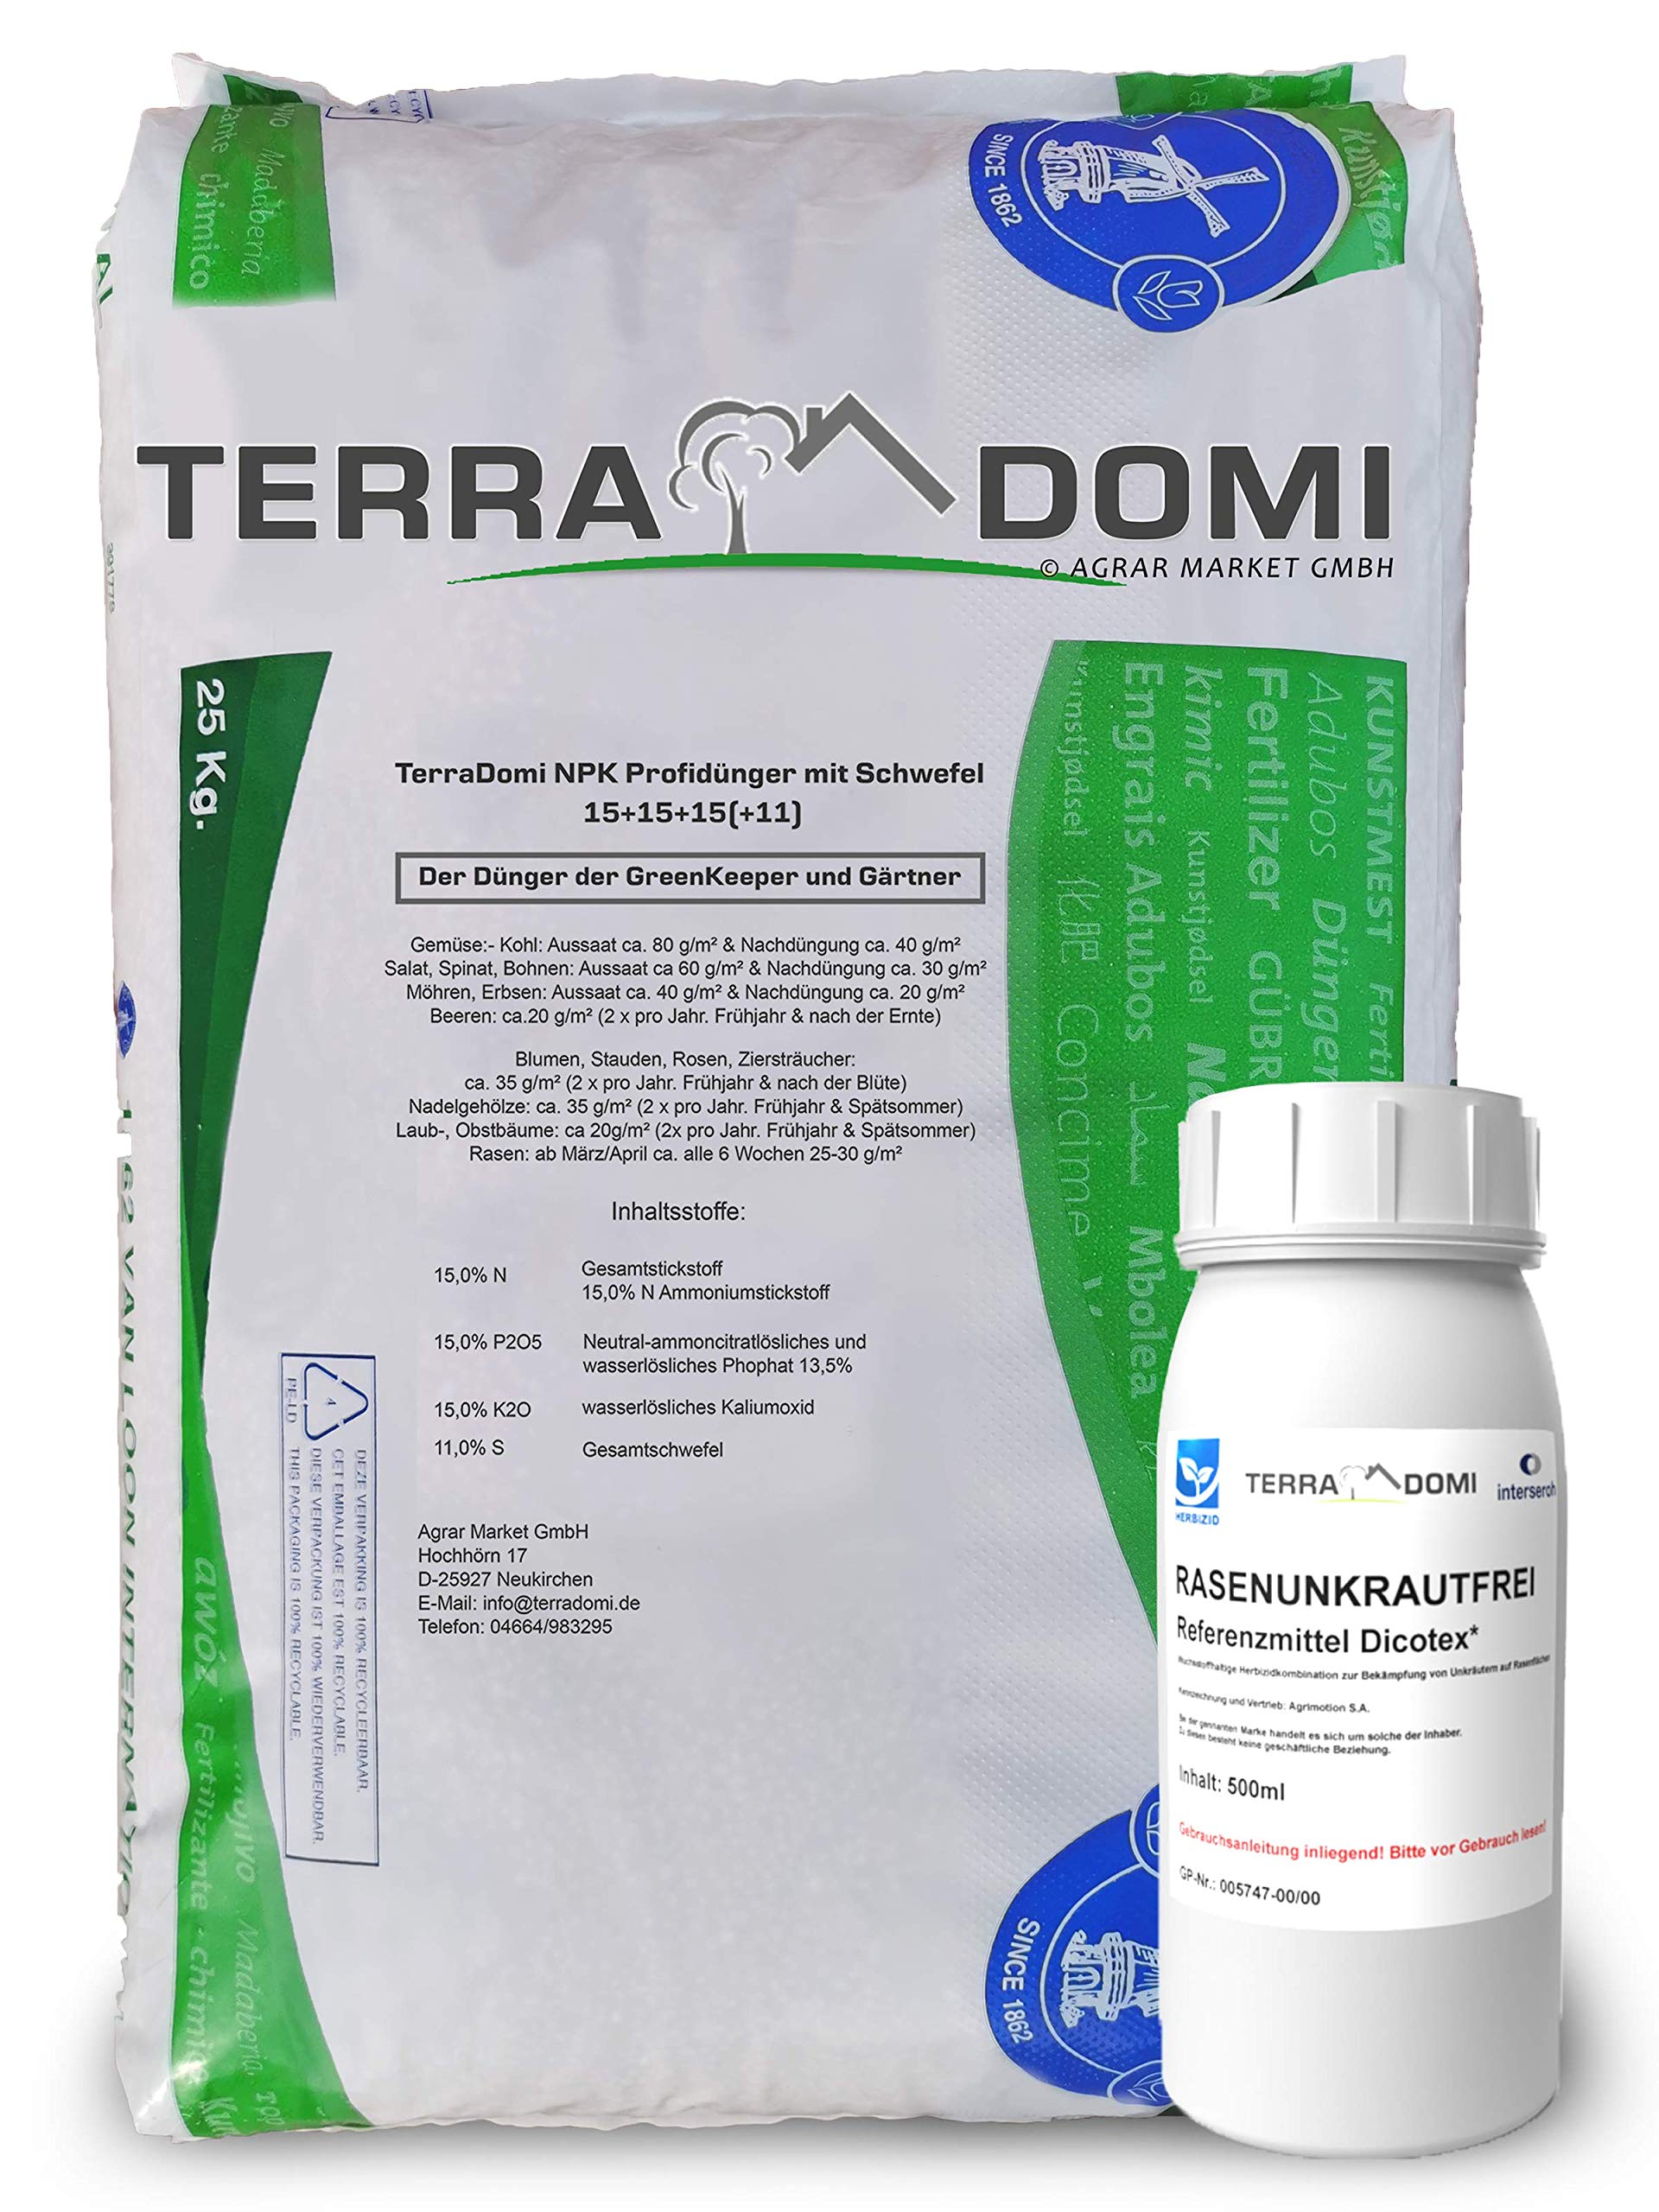 TerraDomi NPK 15-15-15 Rasendünger 25kg mit 500ml Rasenunkrautvernichter, Referenzmittel: Dicotex für bis zu 600 m2 I unschlagbare Zweifachwirkung, gegen gängige Unkräuter, Herbizid